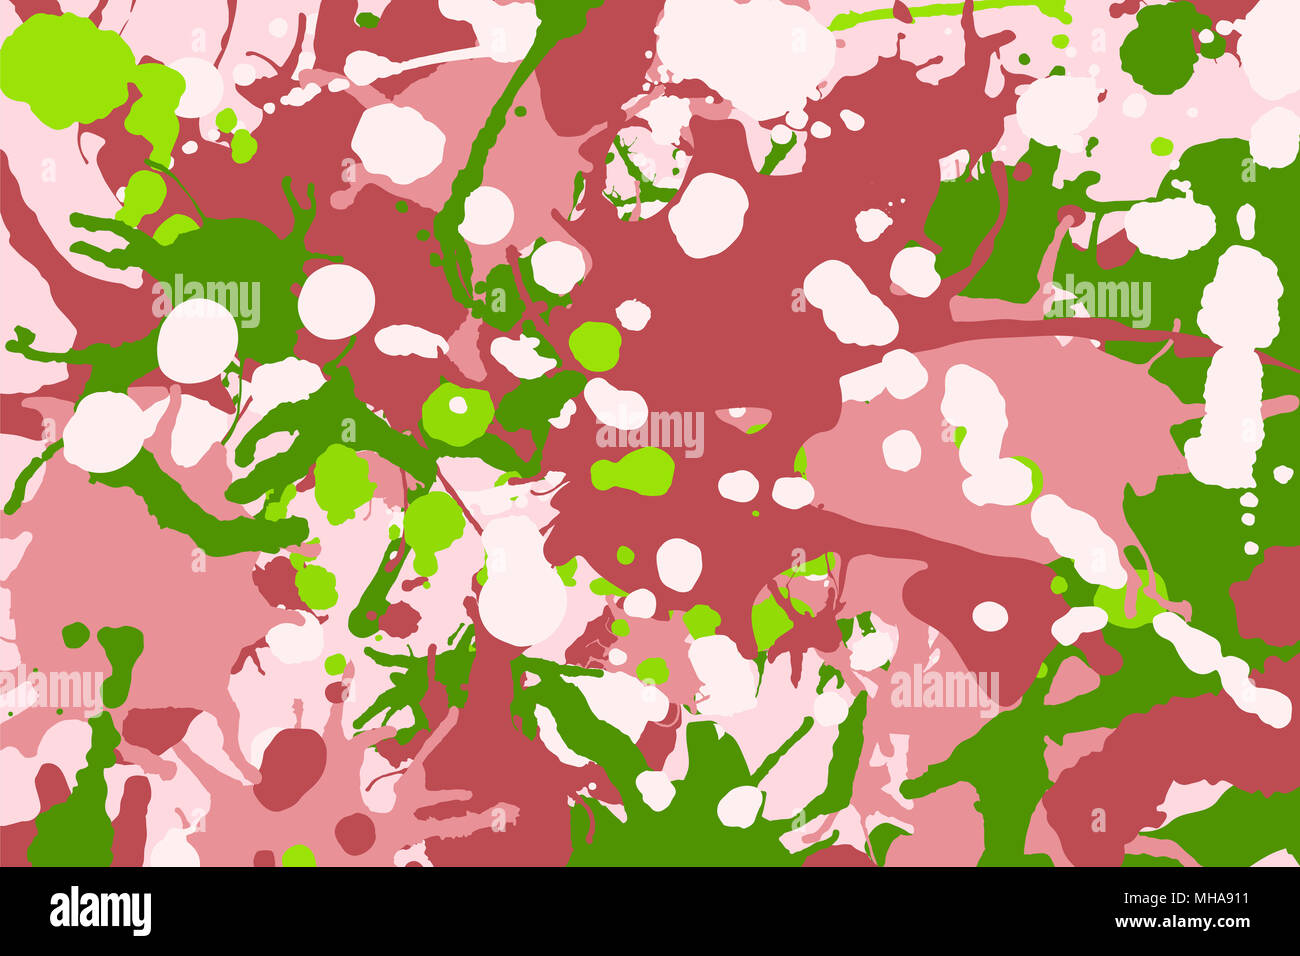 Rosa, Verde, rosso, inchiostro bianco gli spruzzi di vernice camouflage sfondo colorato Foto Stock